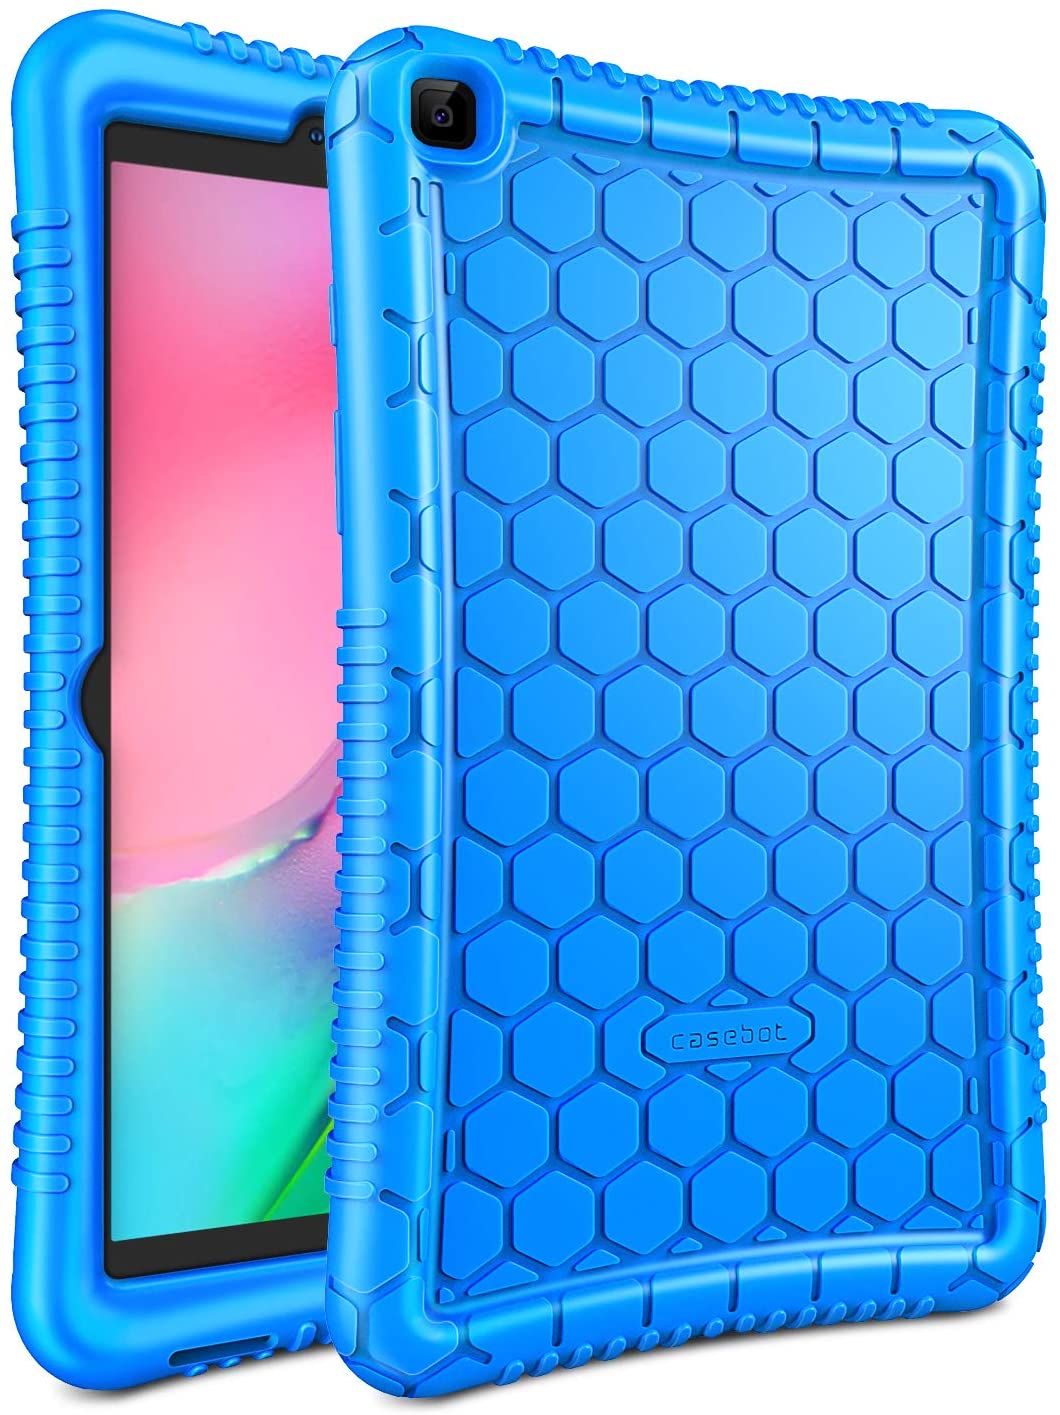 Samsung Galaxy Tab A 8.0 Case Silicone Blue